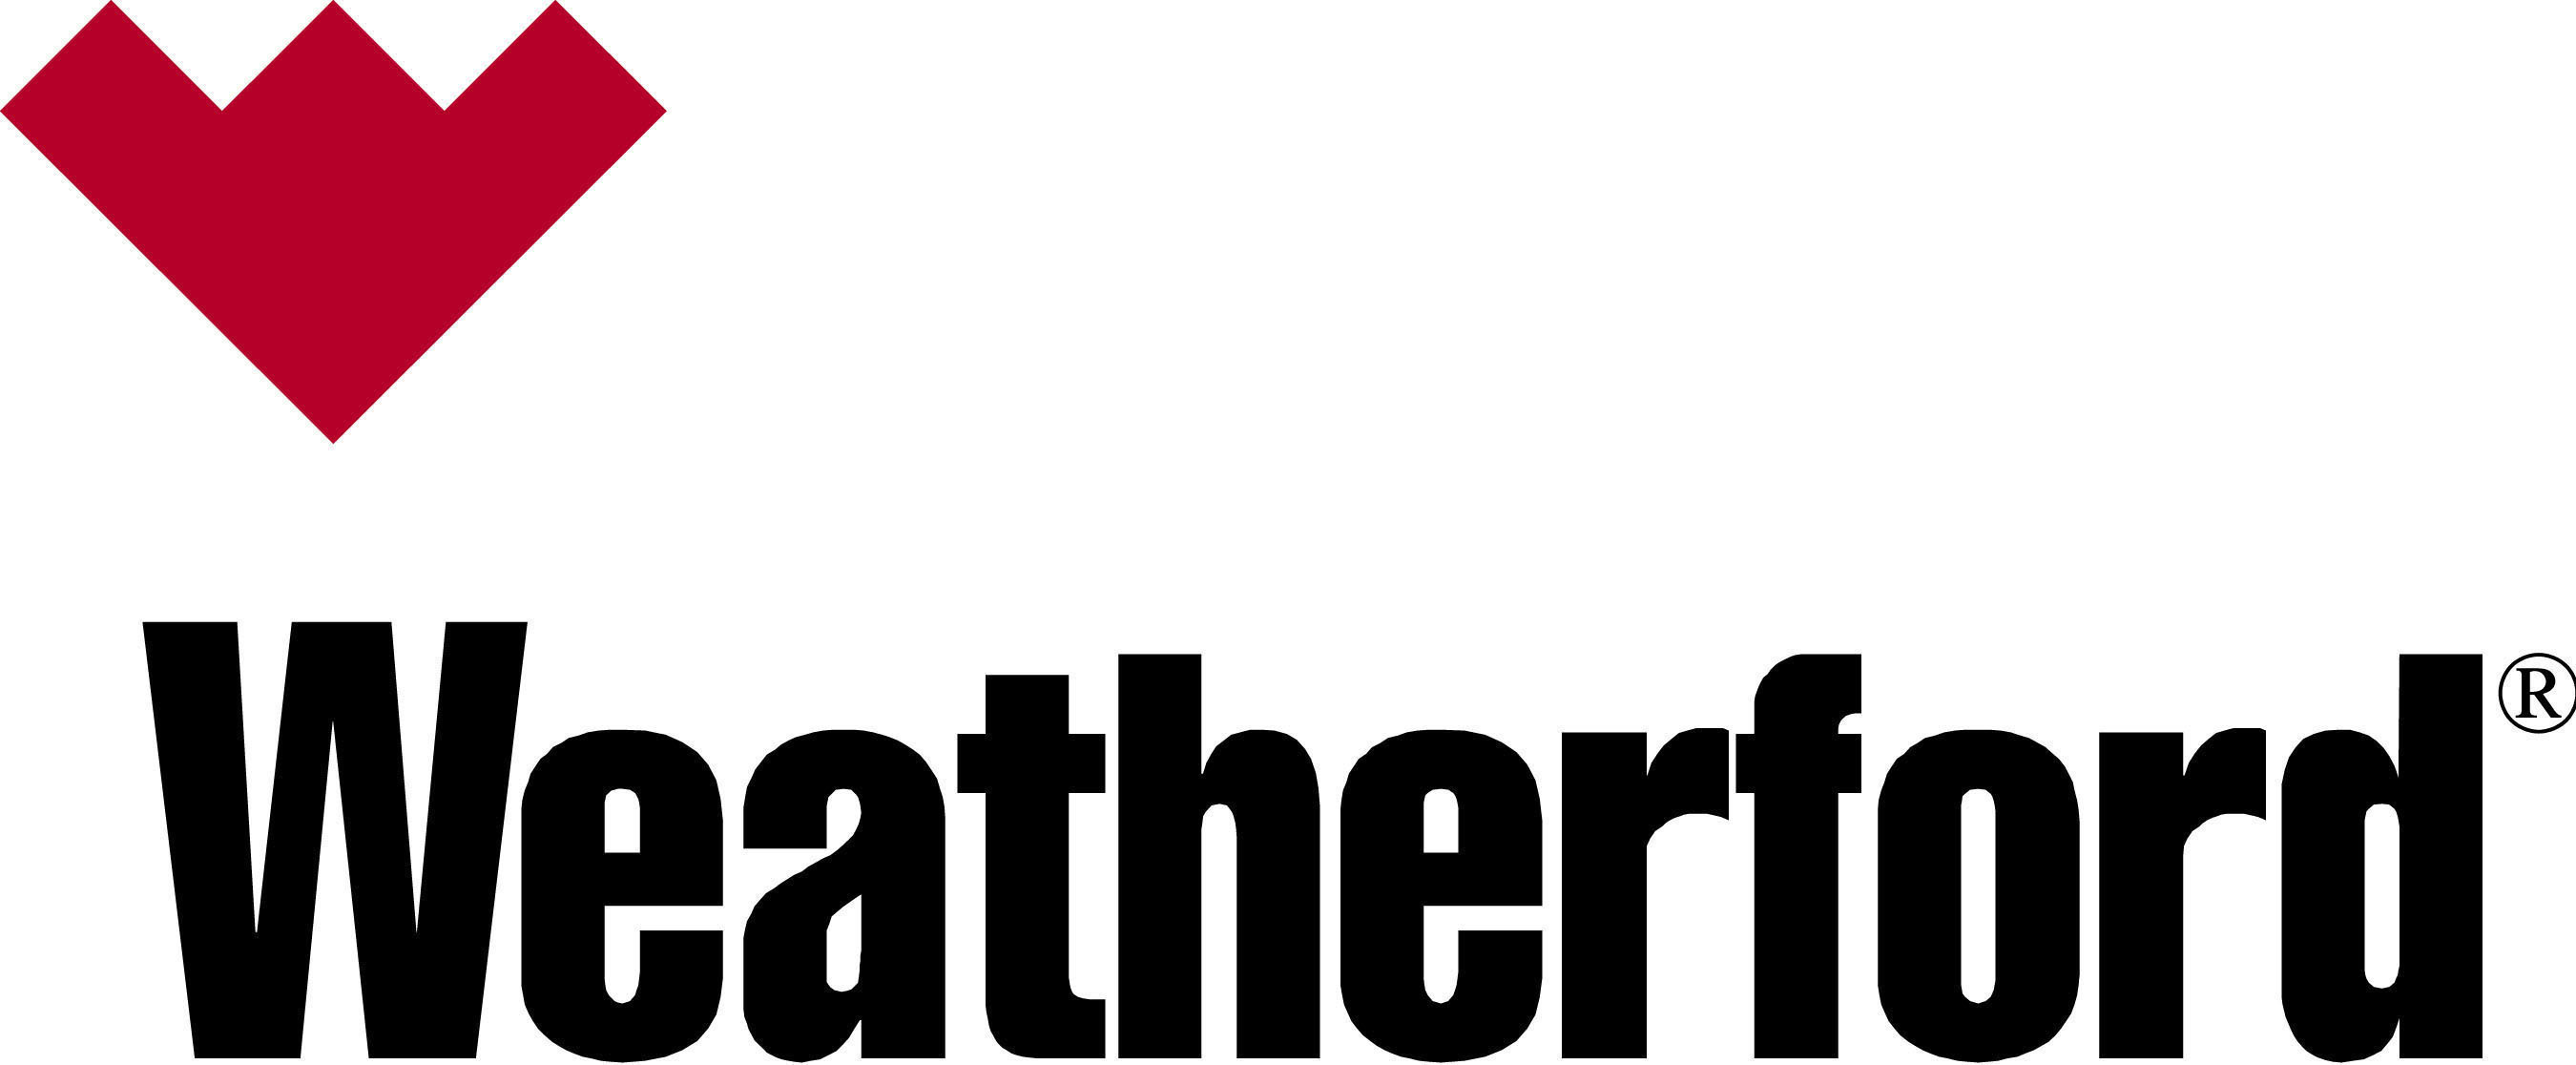 Weatherford logo. (PRNewsFoto/WEATHERFORD INTERNATIONAL) (PRNewsFoto/)